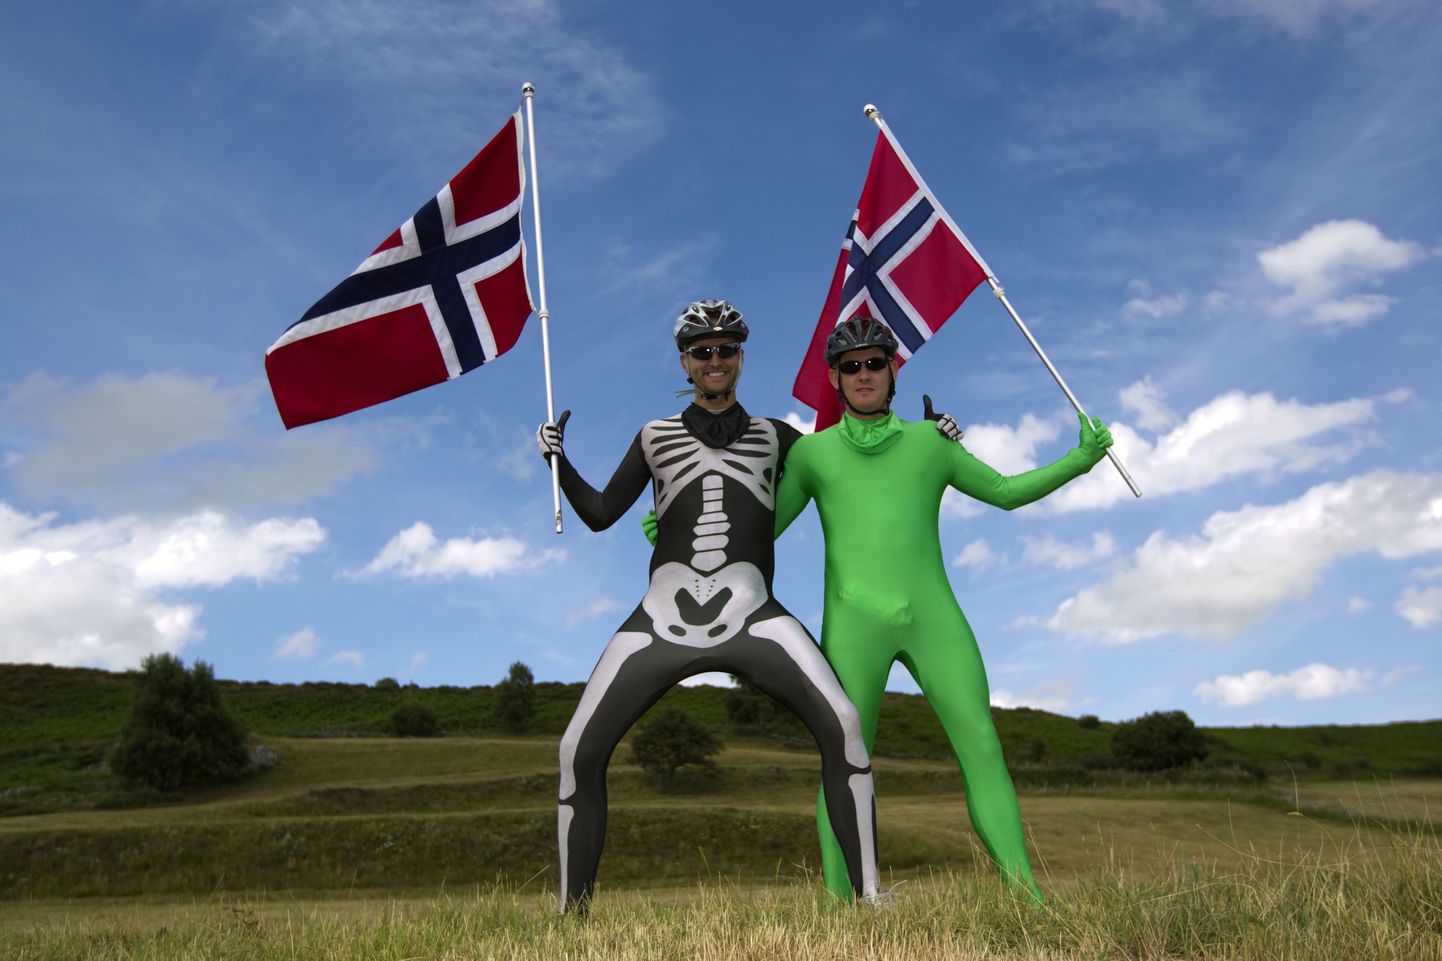 Norrakatest spordihuvilised selle aasta Tour de France'il fotograafile poseerimas.